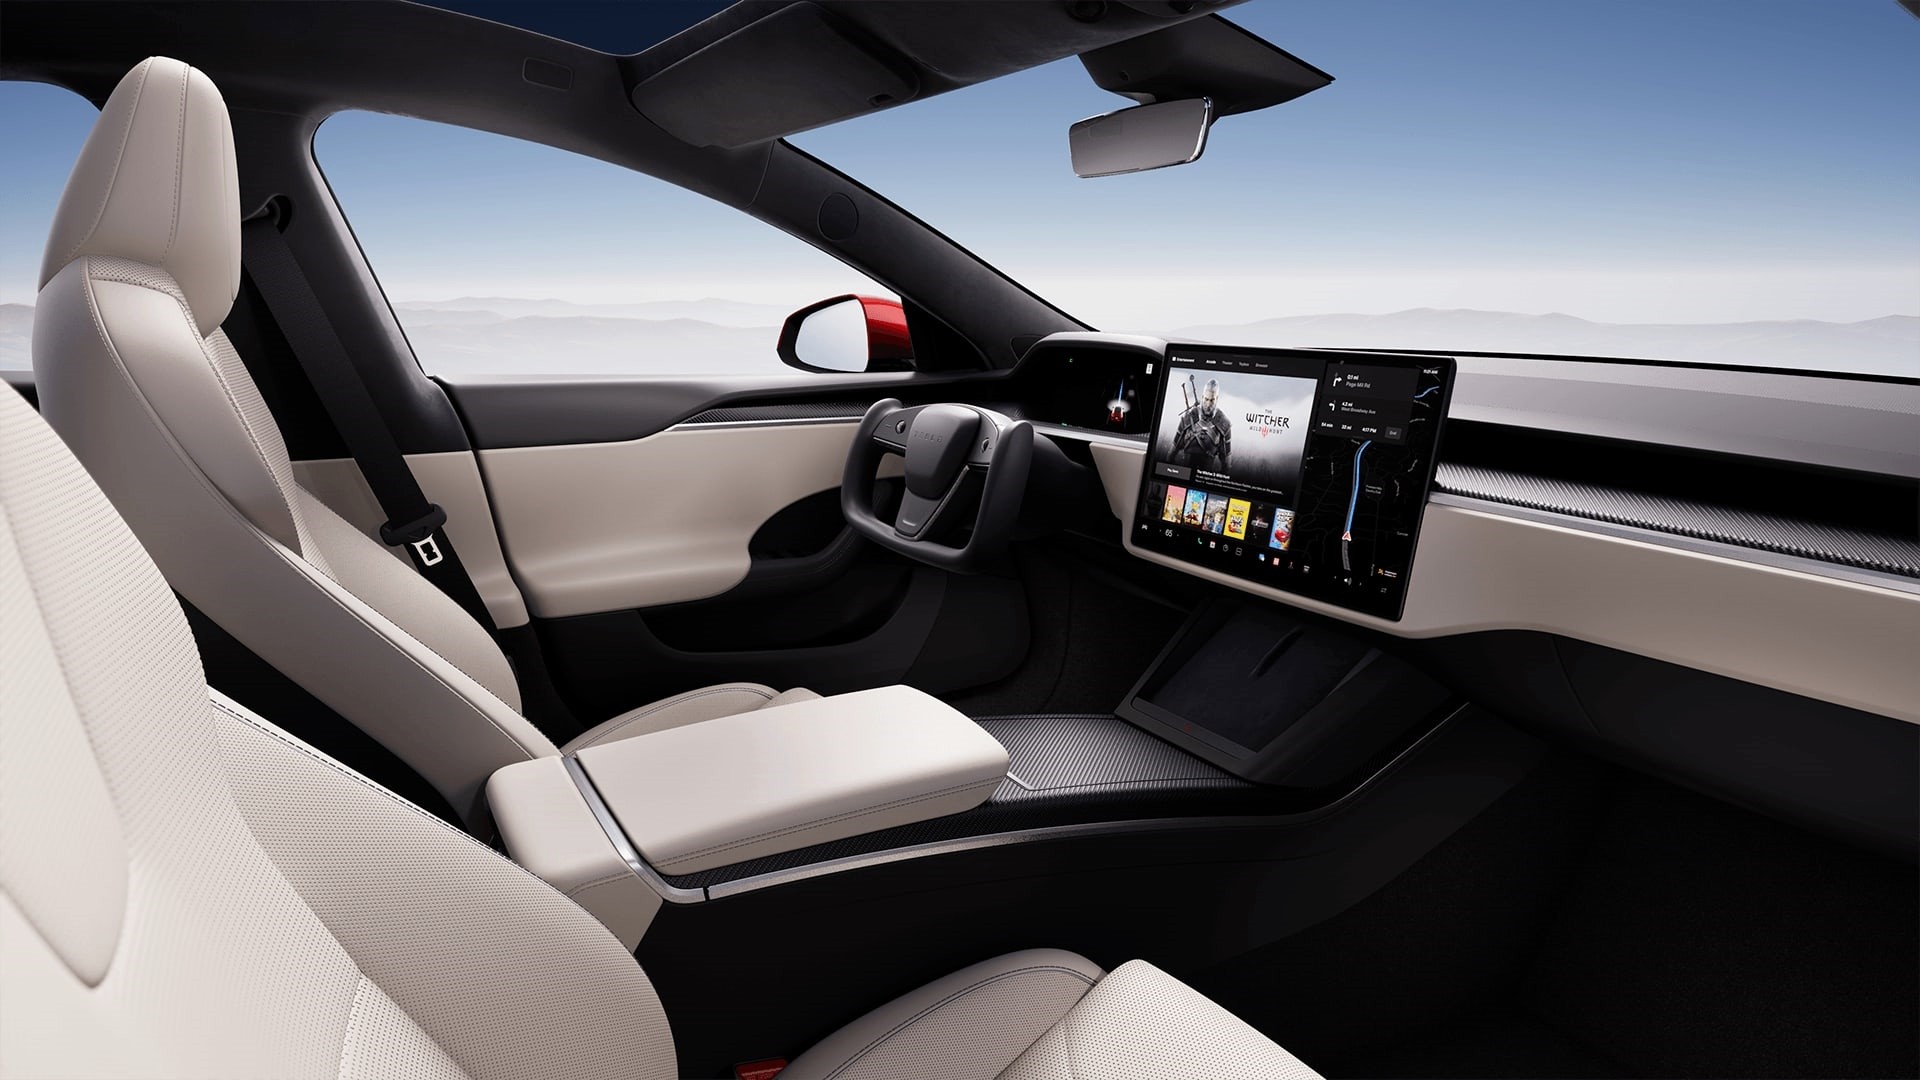 Обновки для Tesla Model S и Model X: «нормальный» руль и улучшенные тормоза